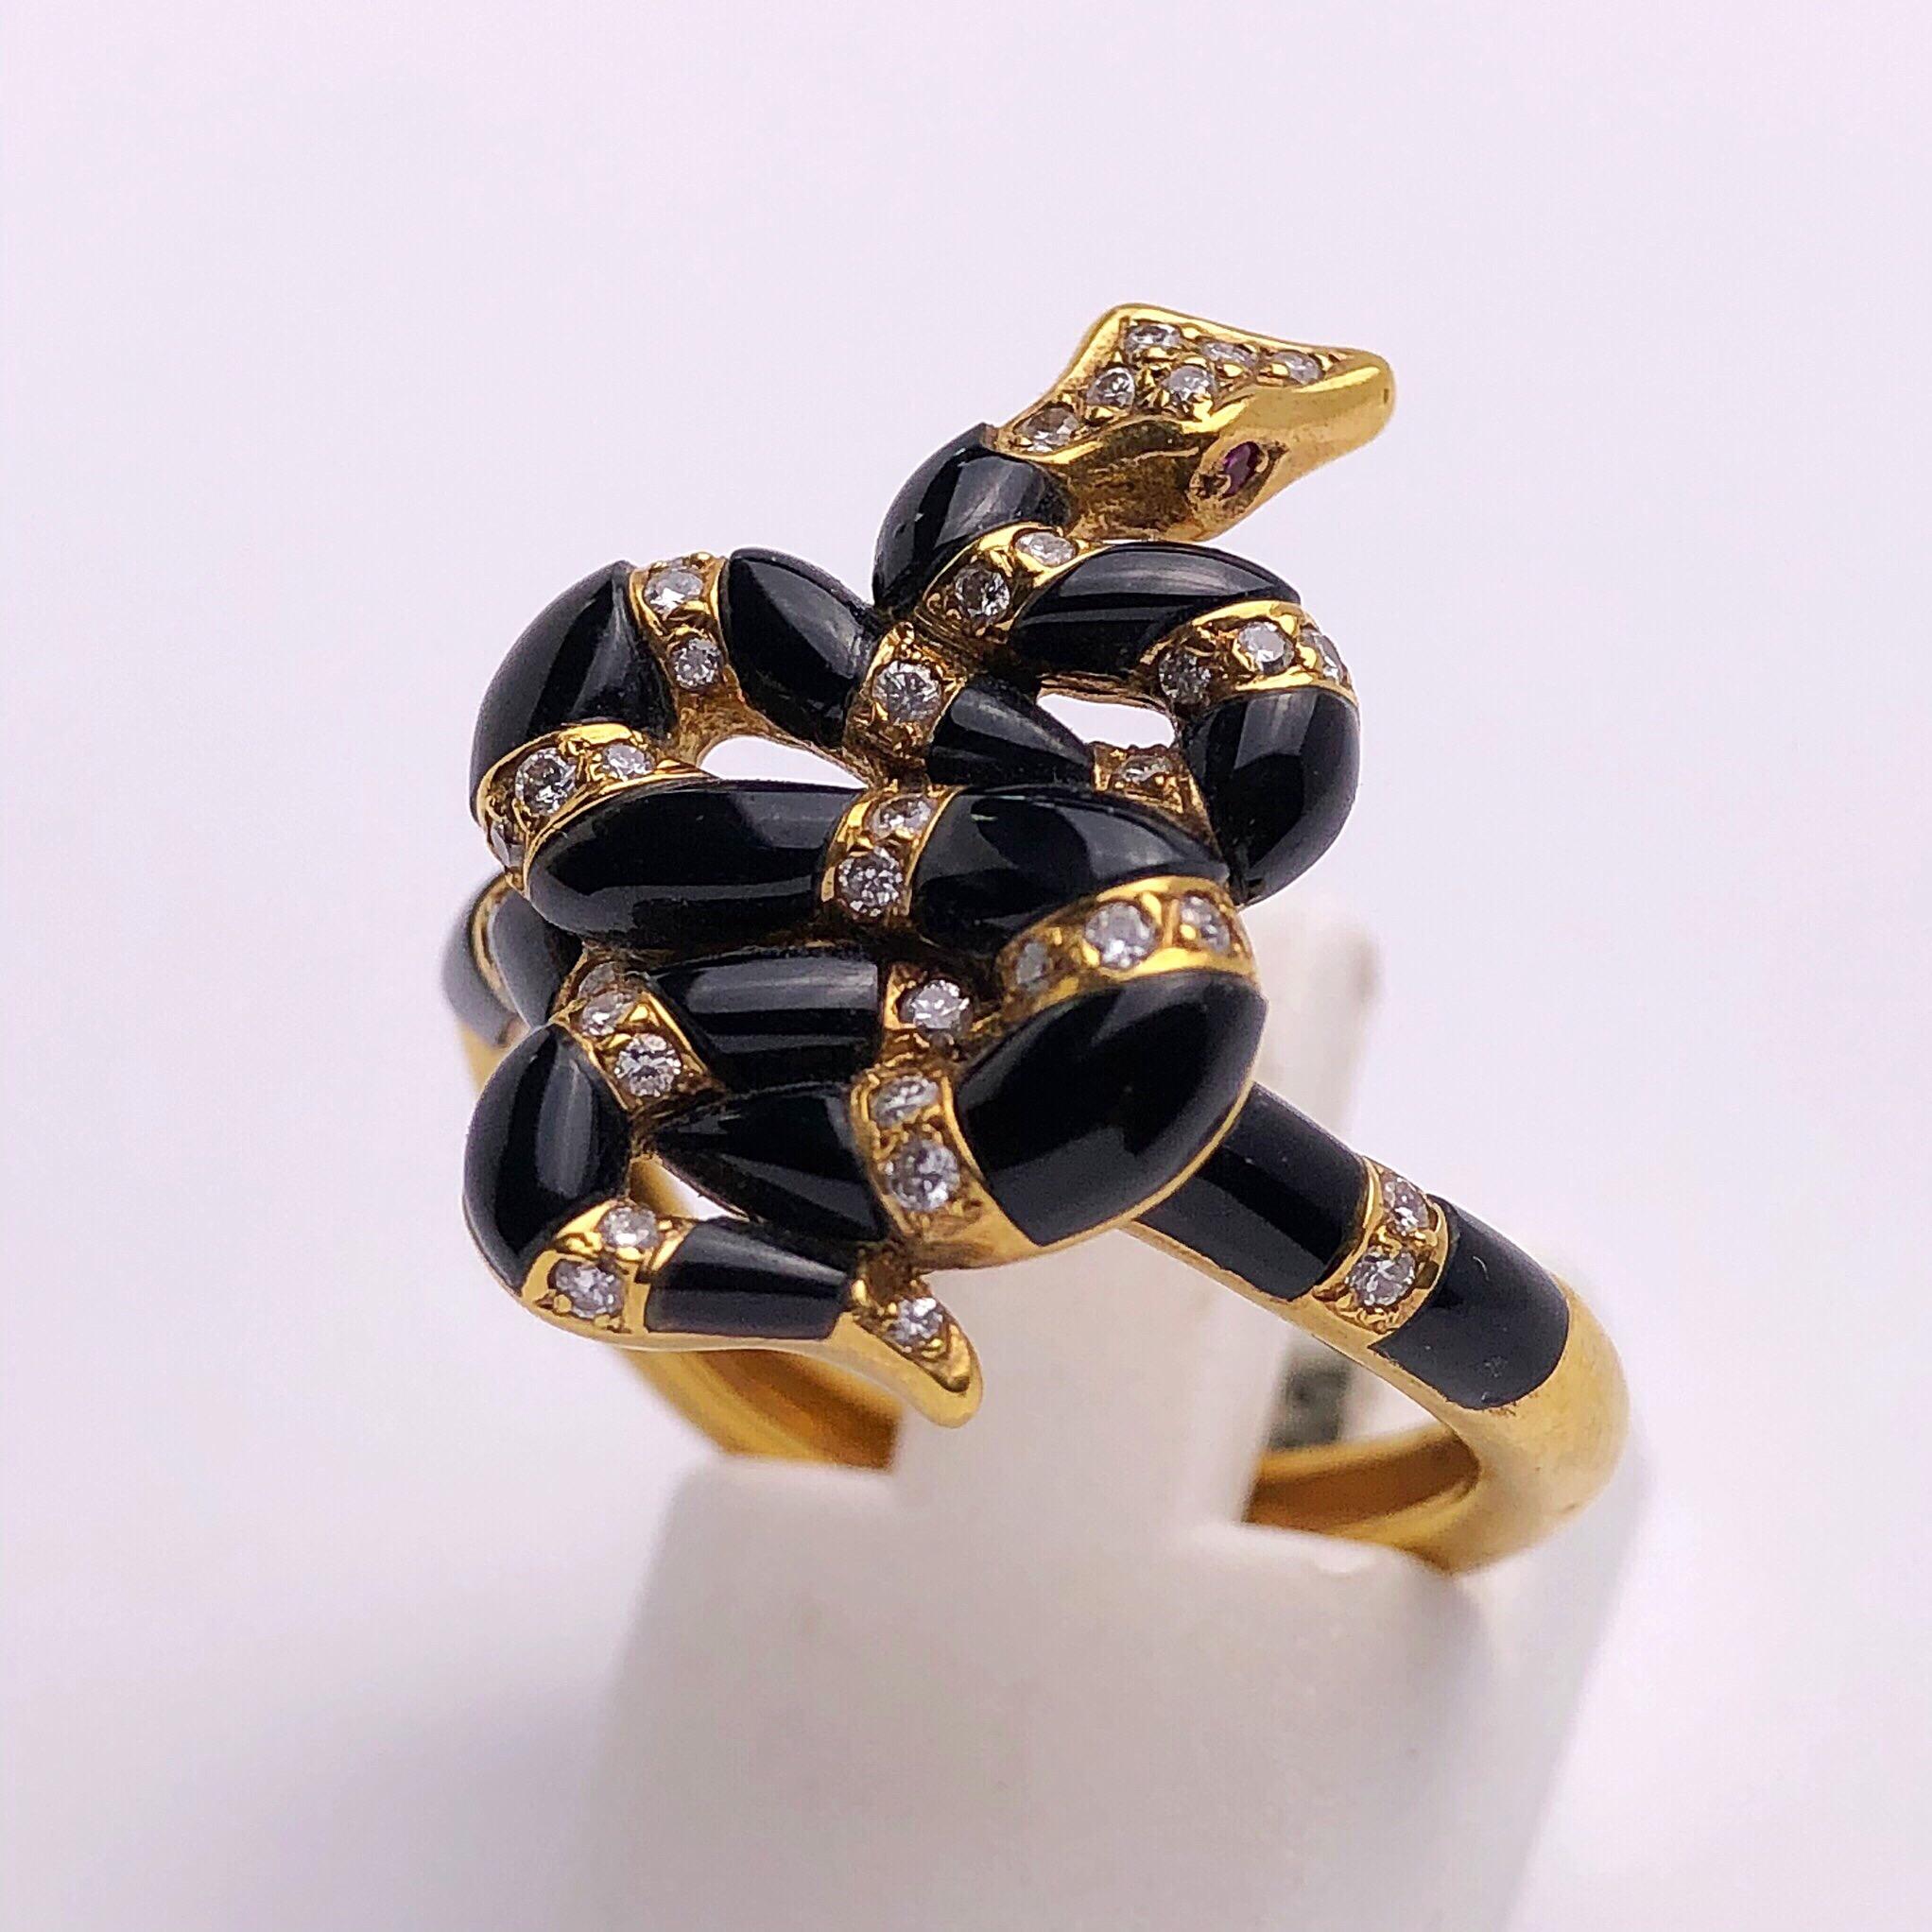 Carrera Y Carrera hat seinen berühmten Namen mit figurativen Designs, einer Besessenheit für Oberflächen und einer überzeugenden Art, die Schönheit in Kunst und Natur zu sehen, begründet. Dieser Ring aus 18 Karat Gelbgold ist ein perfektes Beispiel